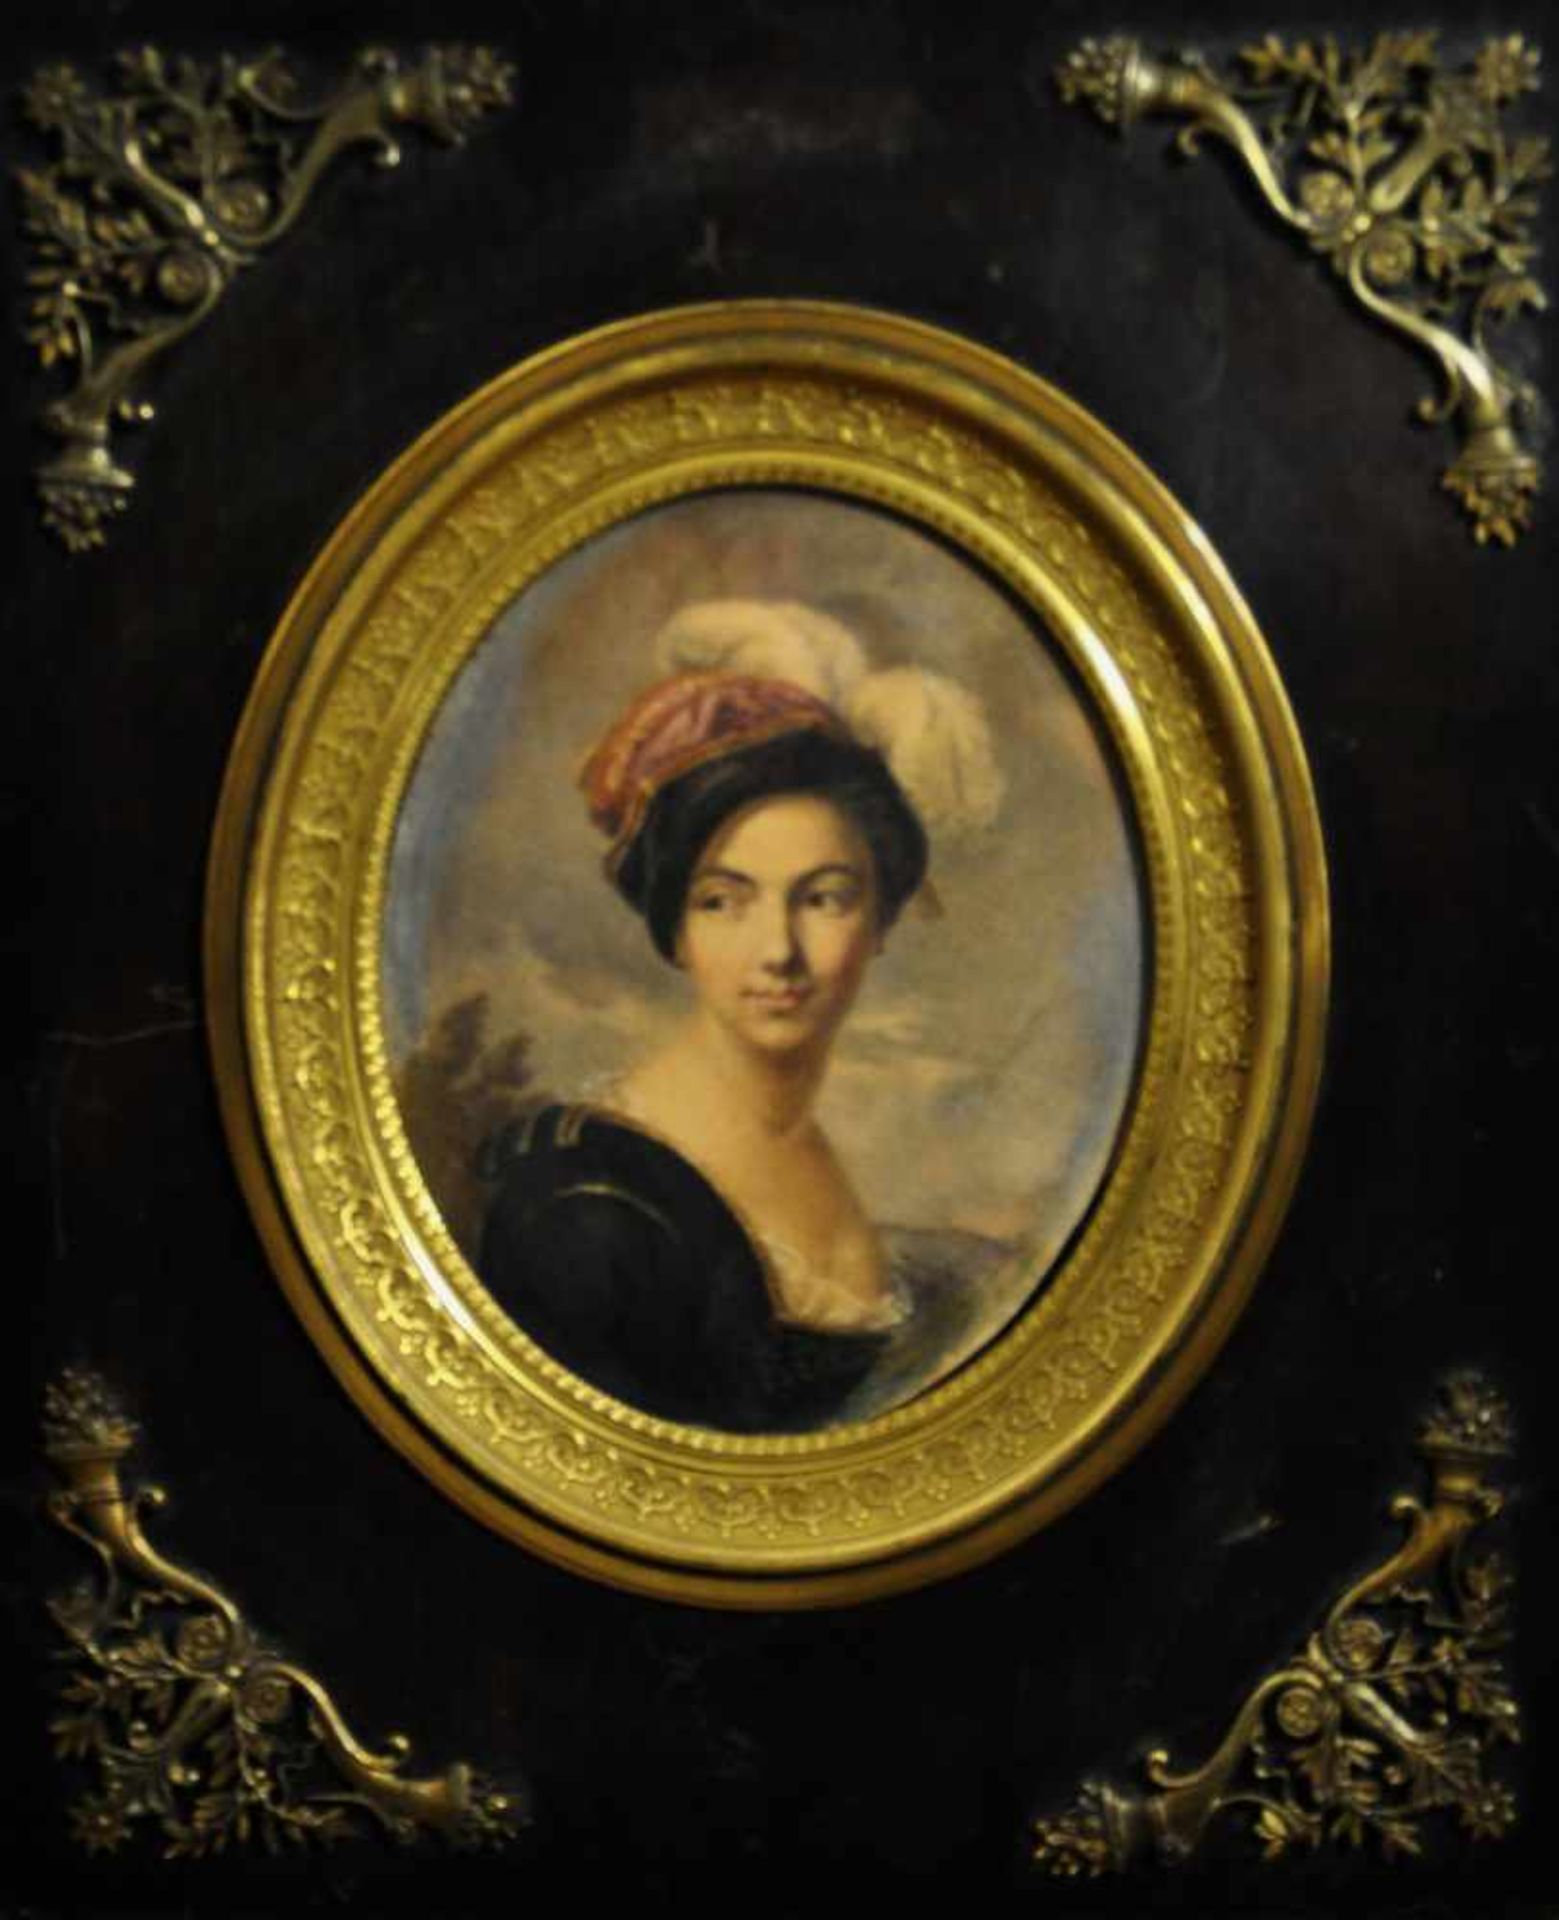 Le Prince, August (1799 Paris - 1826 Nizza), "Junge Frau mit Hut"